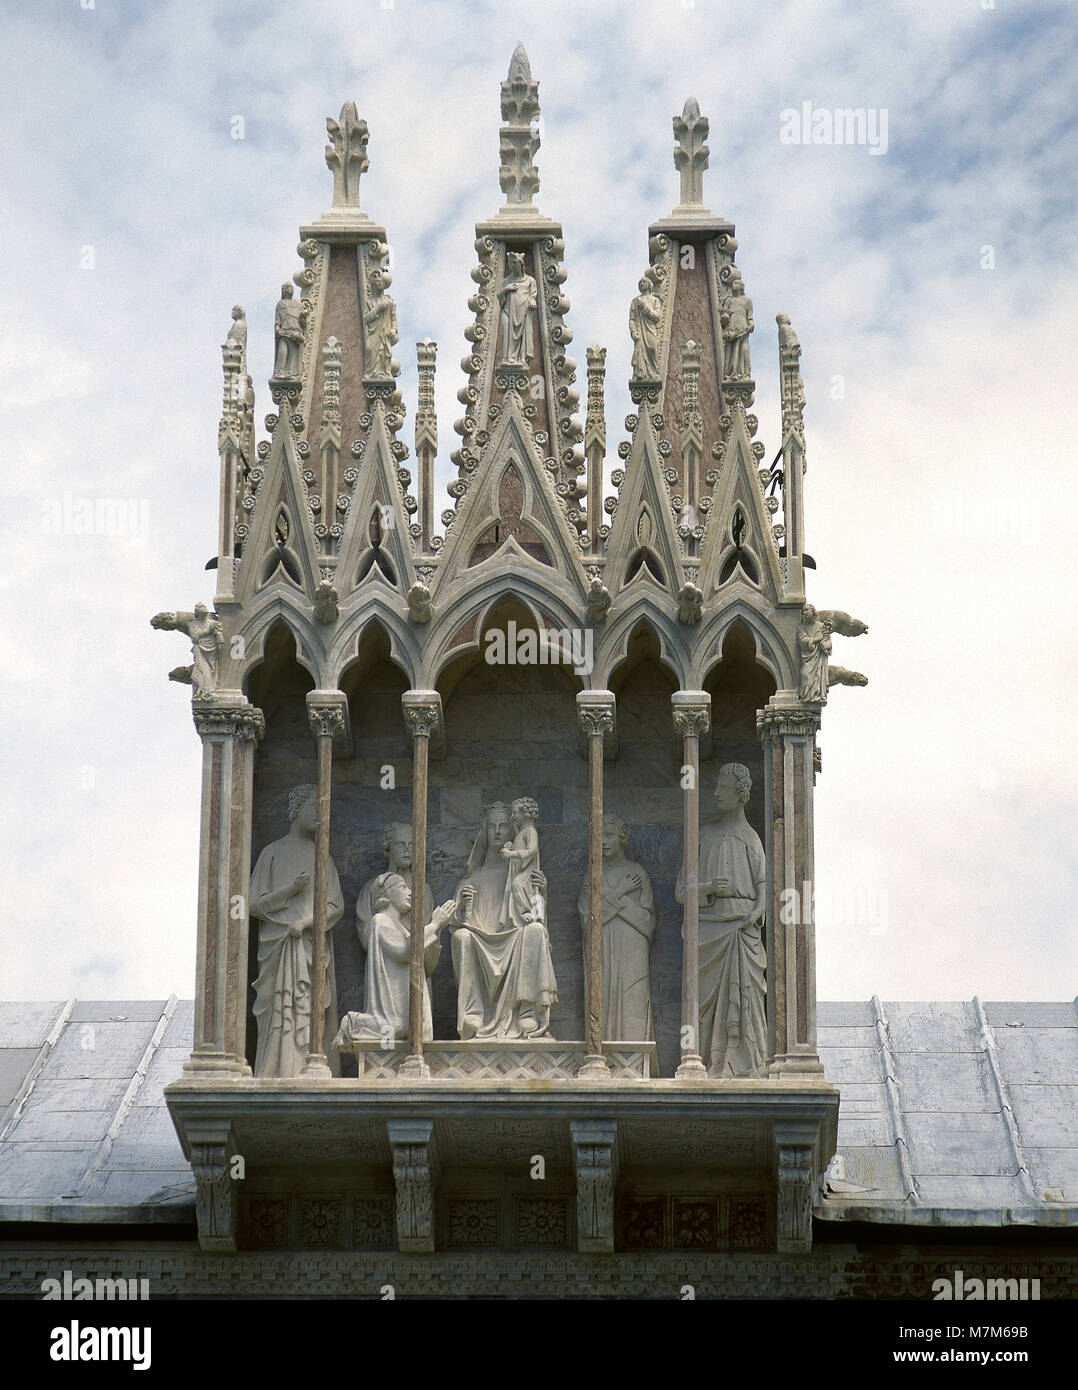 Giovanni Pisano (ca. 1250-ca. 1315). Camposanto Monumentale, 14e siècle. Tabernacle gothique. Il contient la Vierge Marie avec l'Enfant entourée de quatre saints. Pise, Italie. Banque D'Images